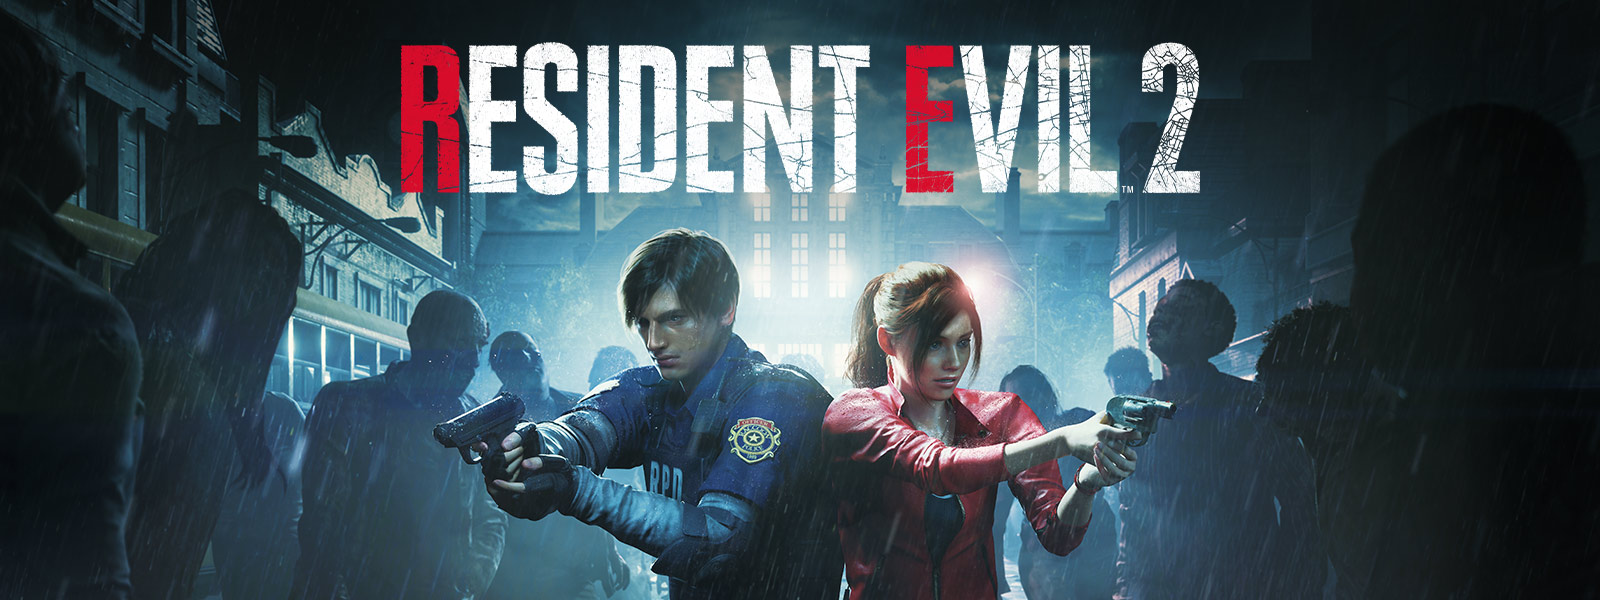 Resident Evil 2, Leon Kennedy og Claire Redfield står side ved side med våpen hevet, omringet av zombier